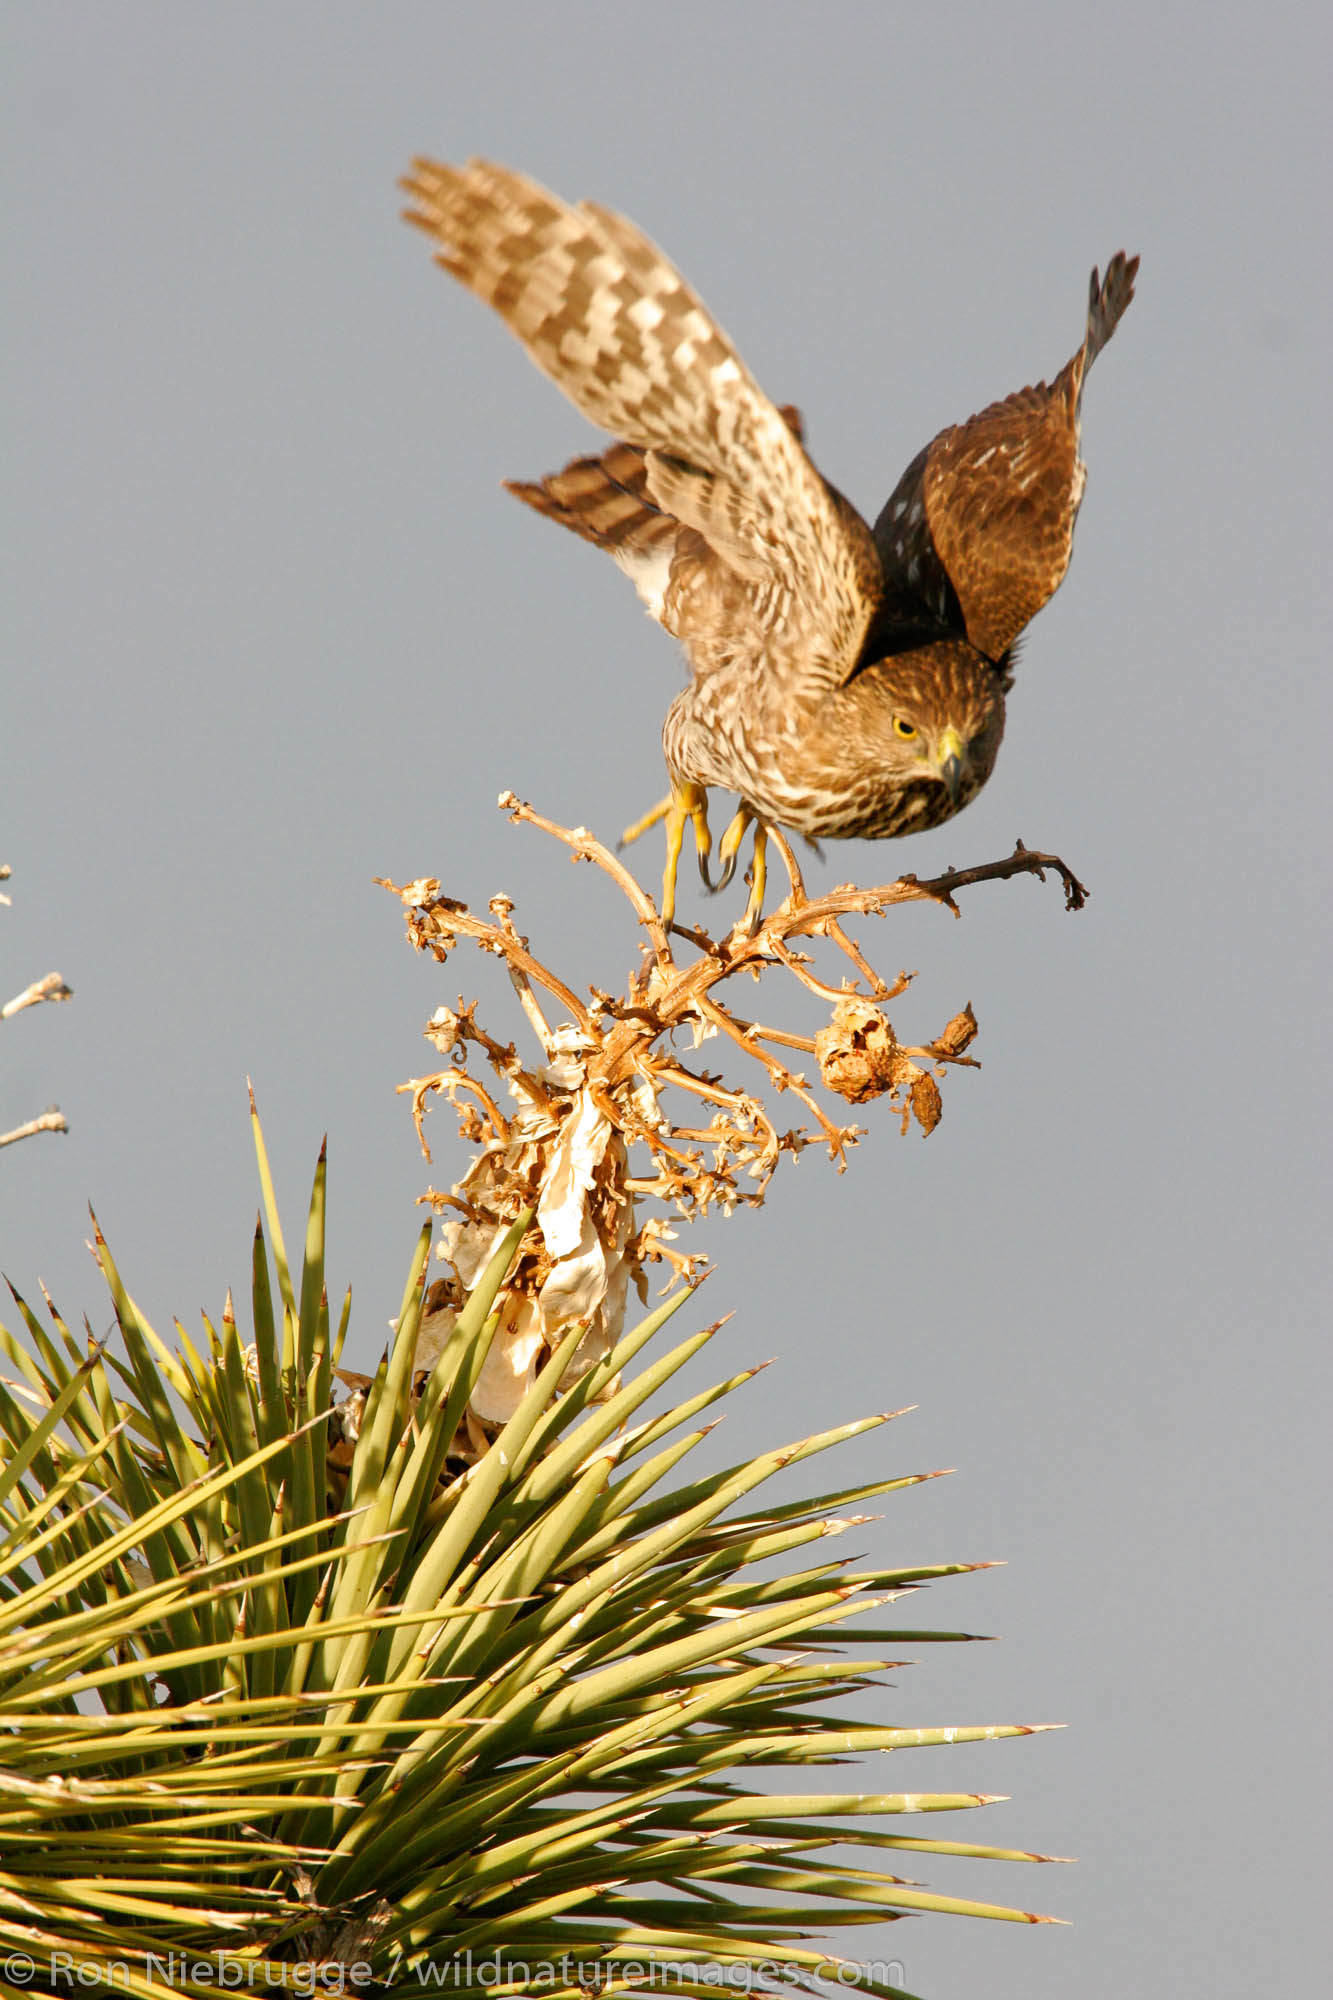 A juvenile Cooper's Hawk (Accipiter cooperii) in a Joshua Tree, Mojave Desert, California.